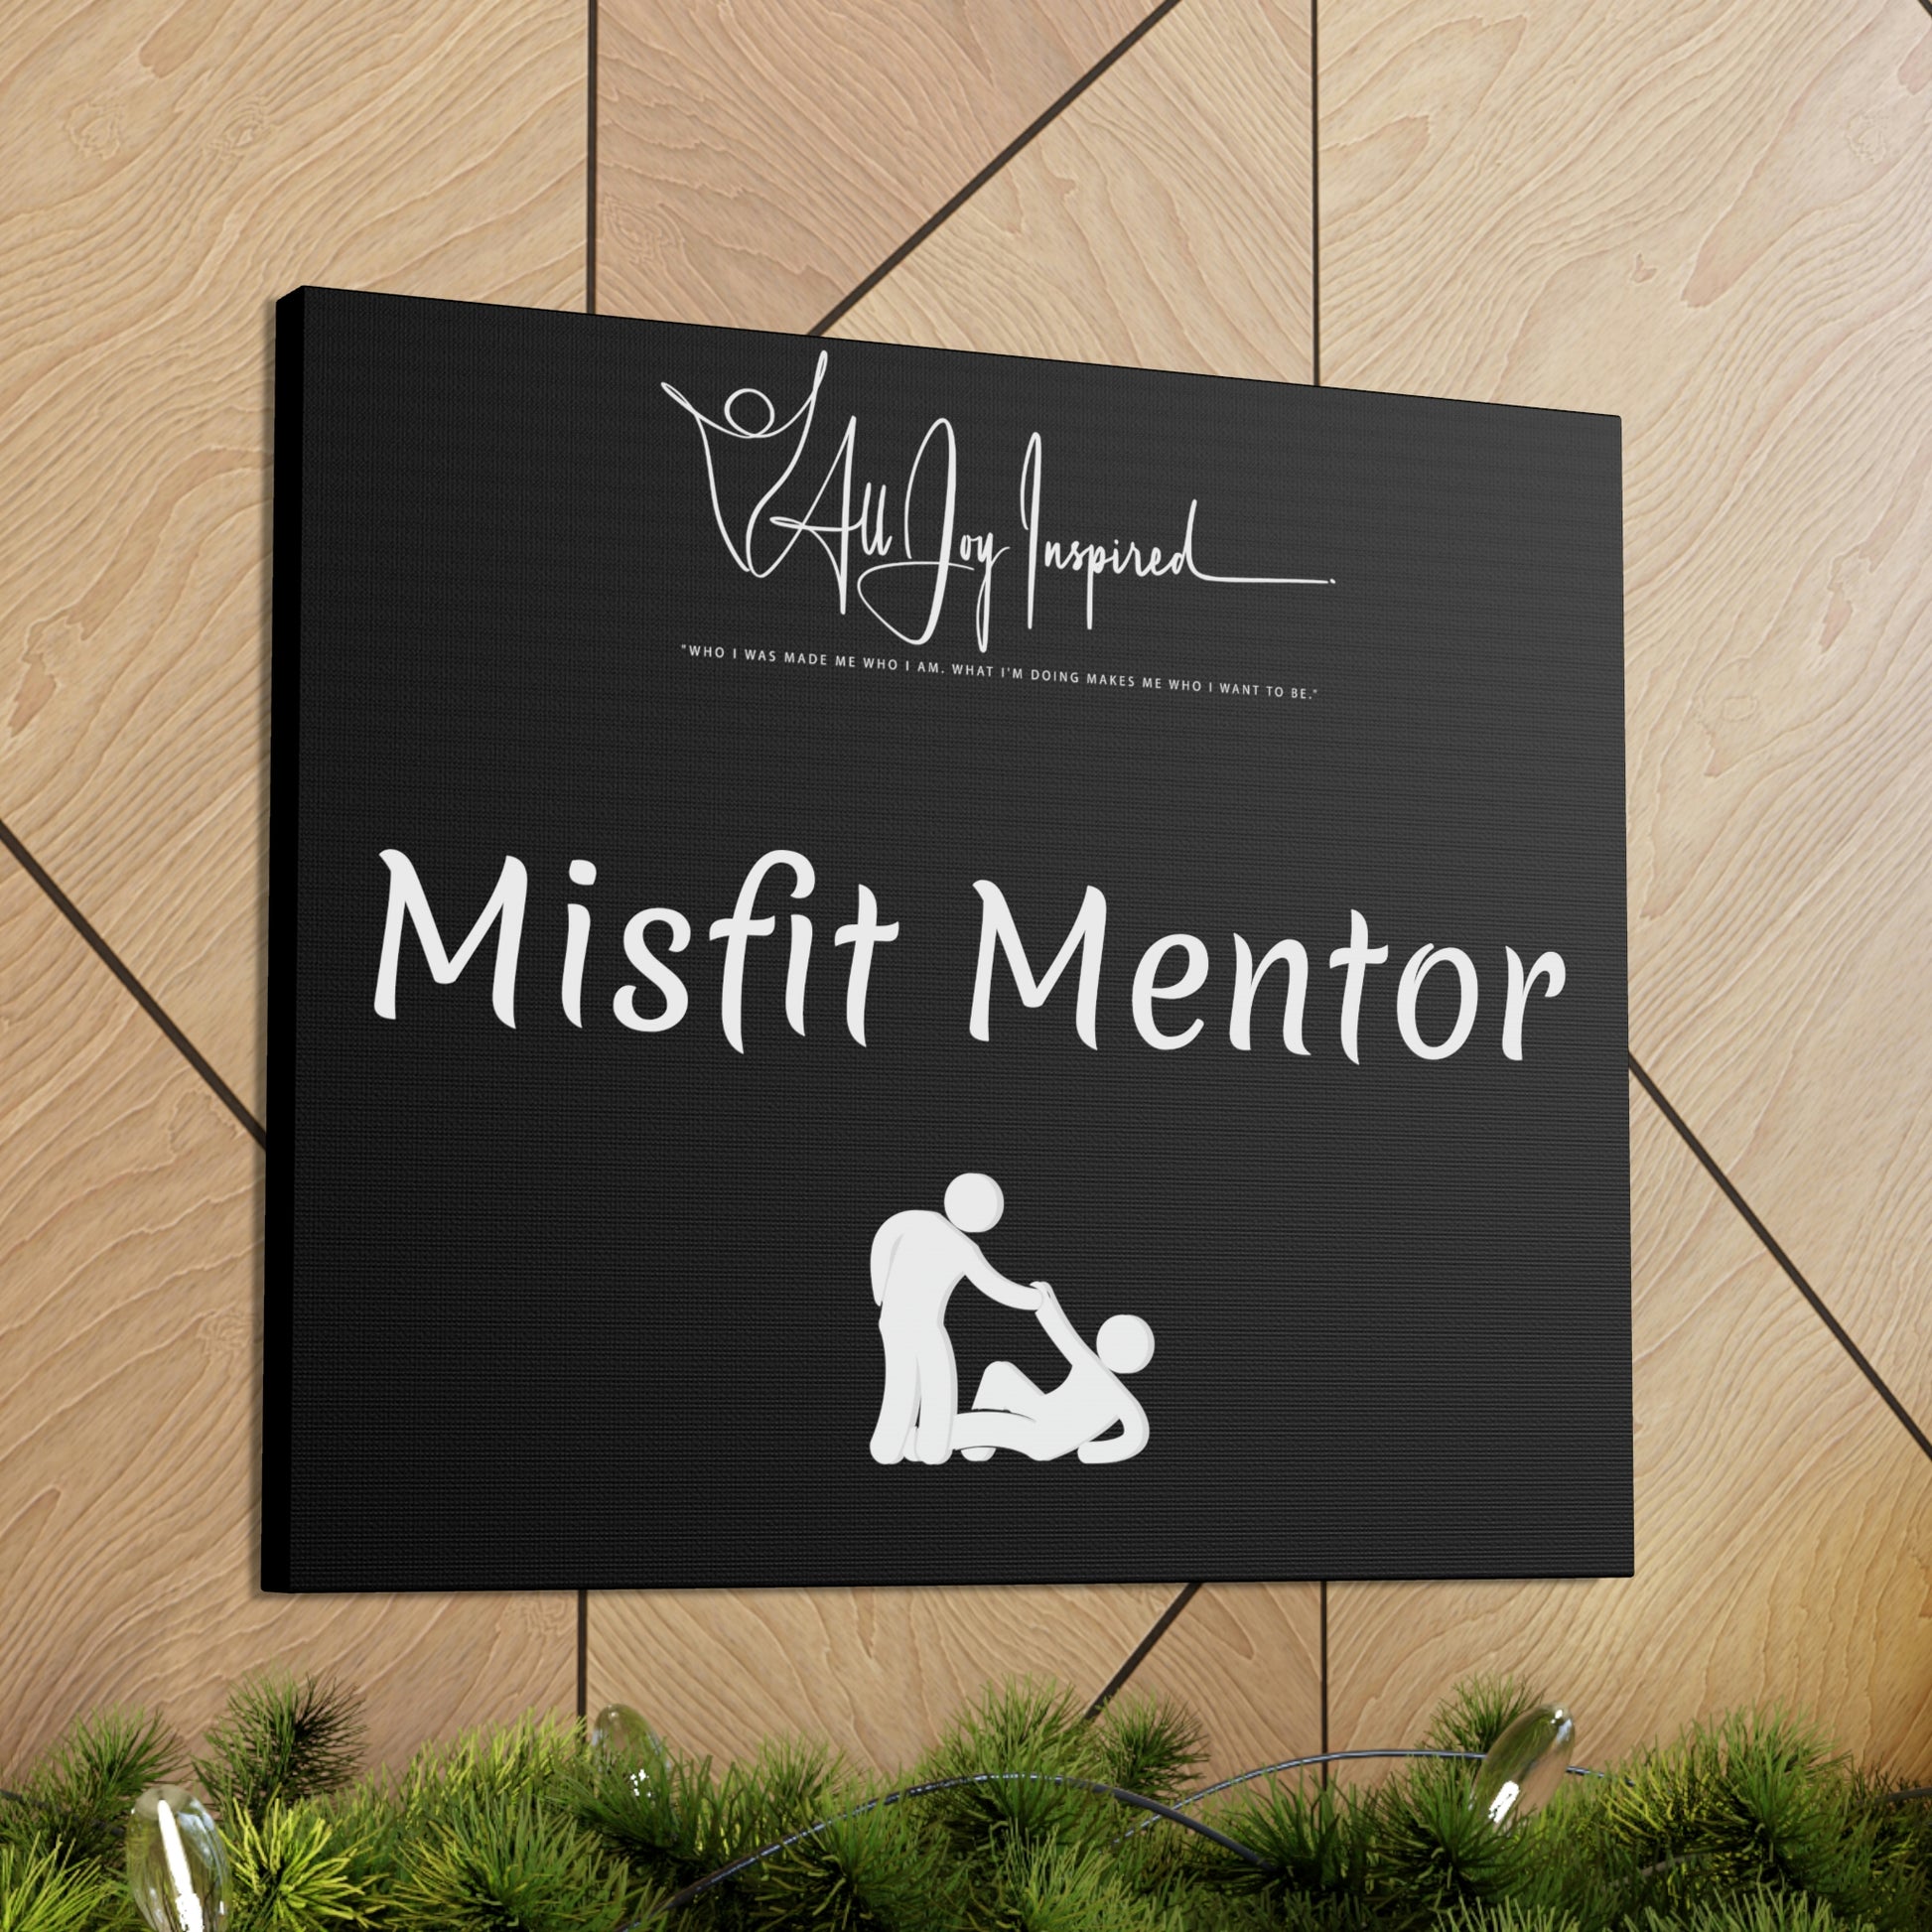 Misfit Mentor Canvas - All JOY Inspired